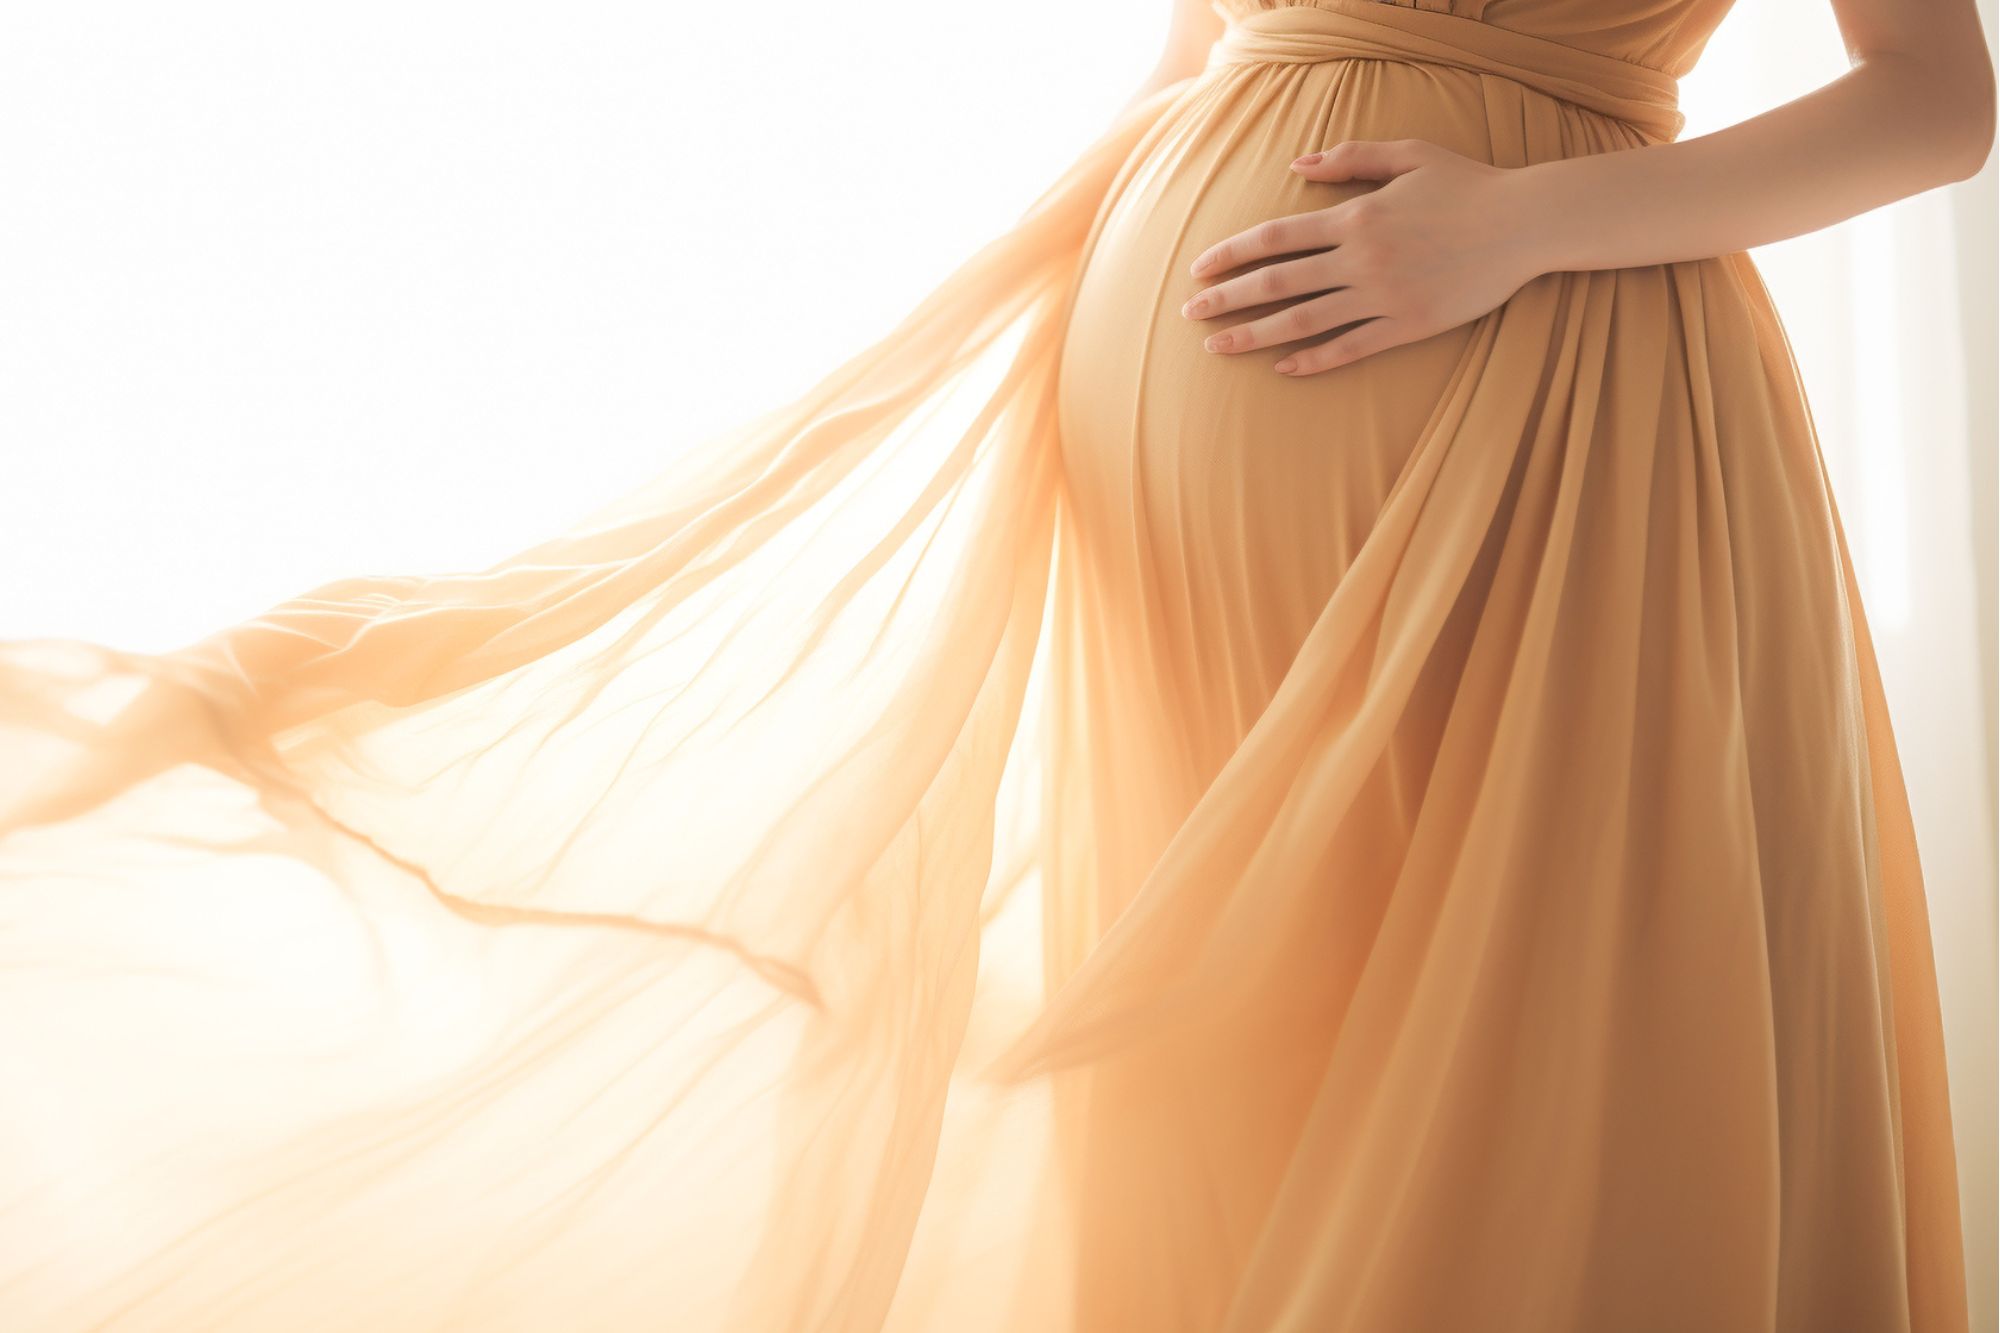 妊娠中の結婚式お呼ばれドレスの選び方・妊婦におすすめの服装